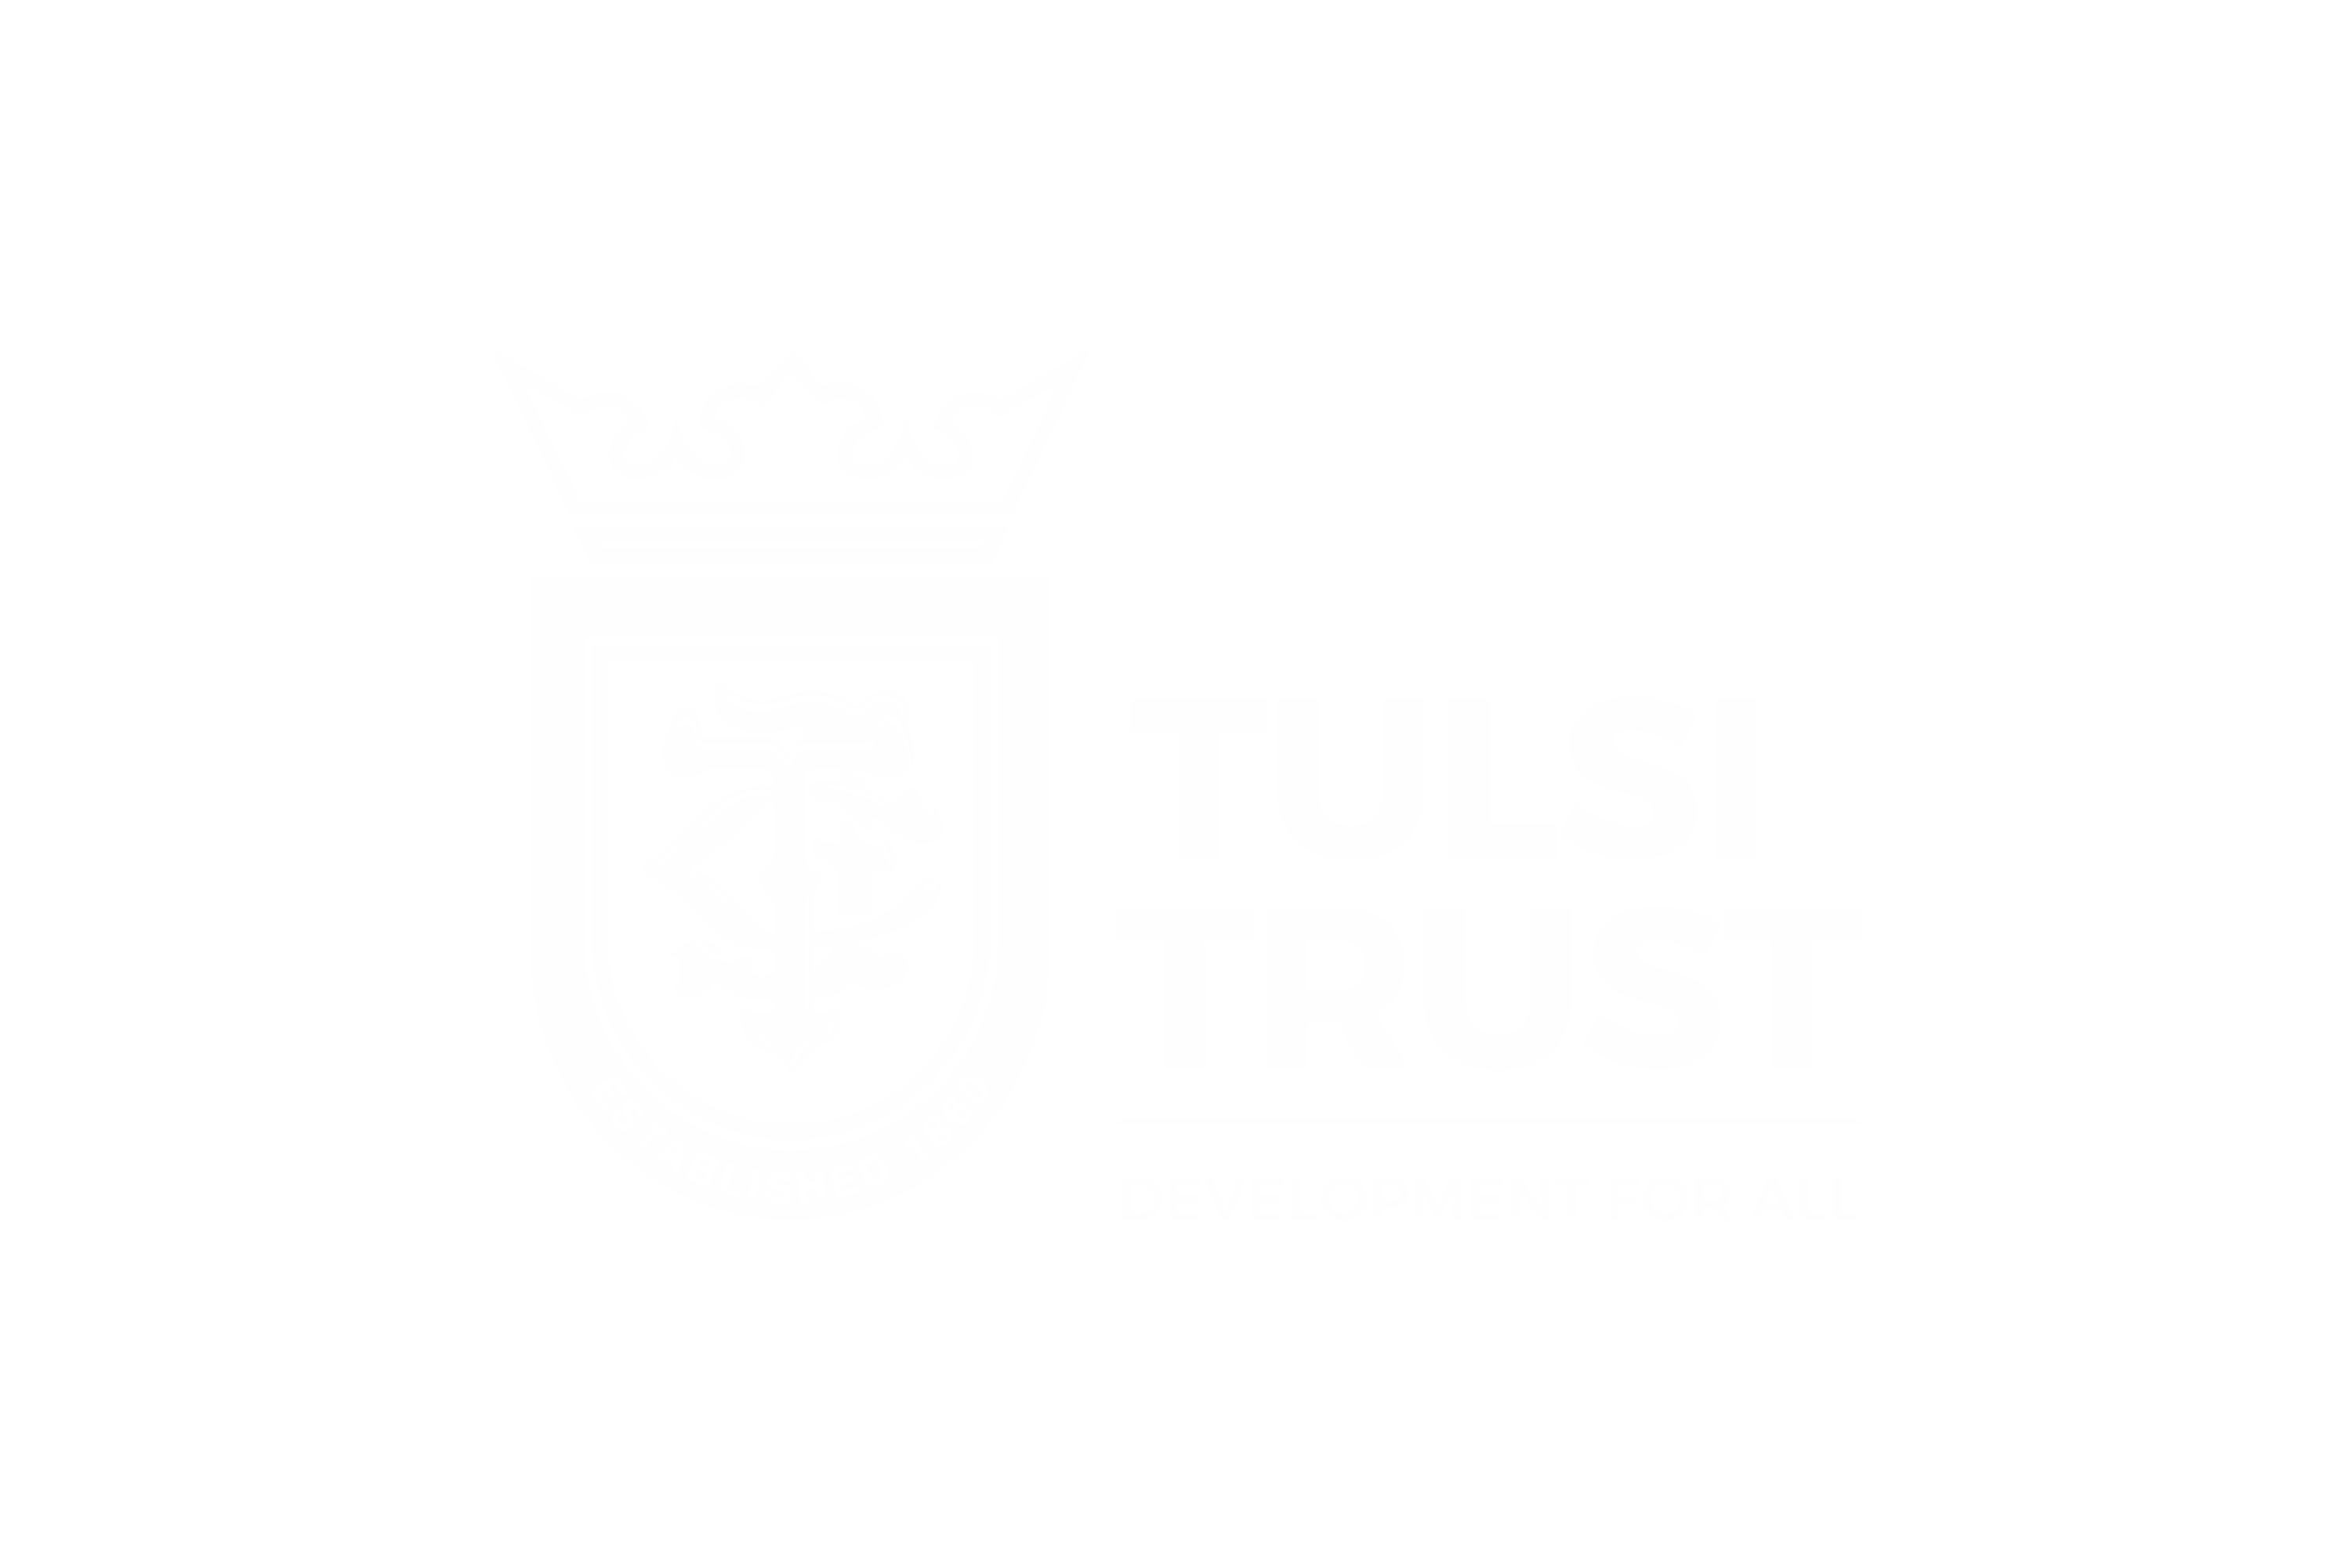 Tulsi Trust